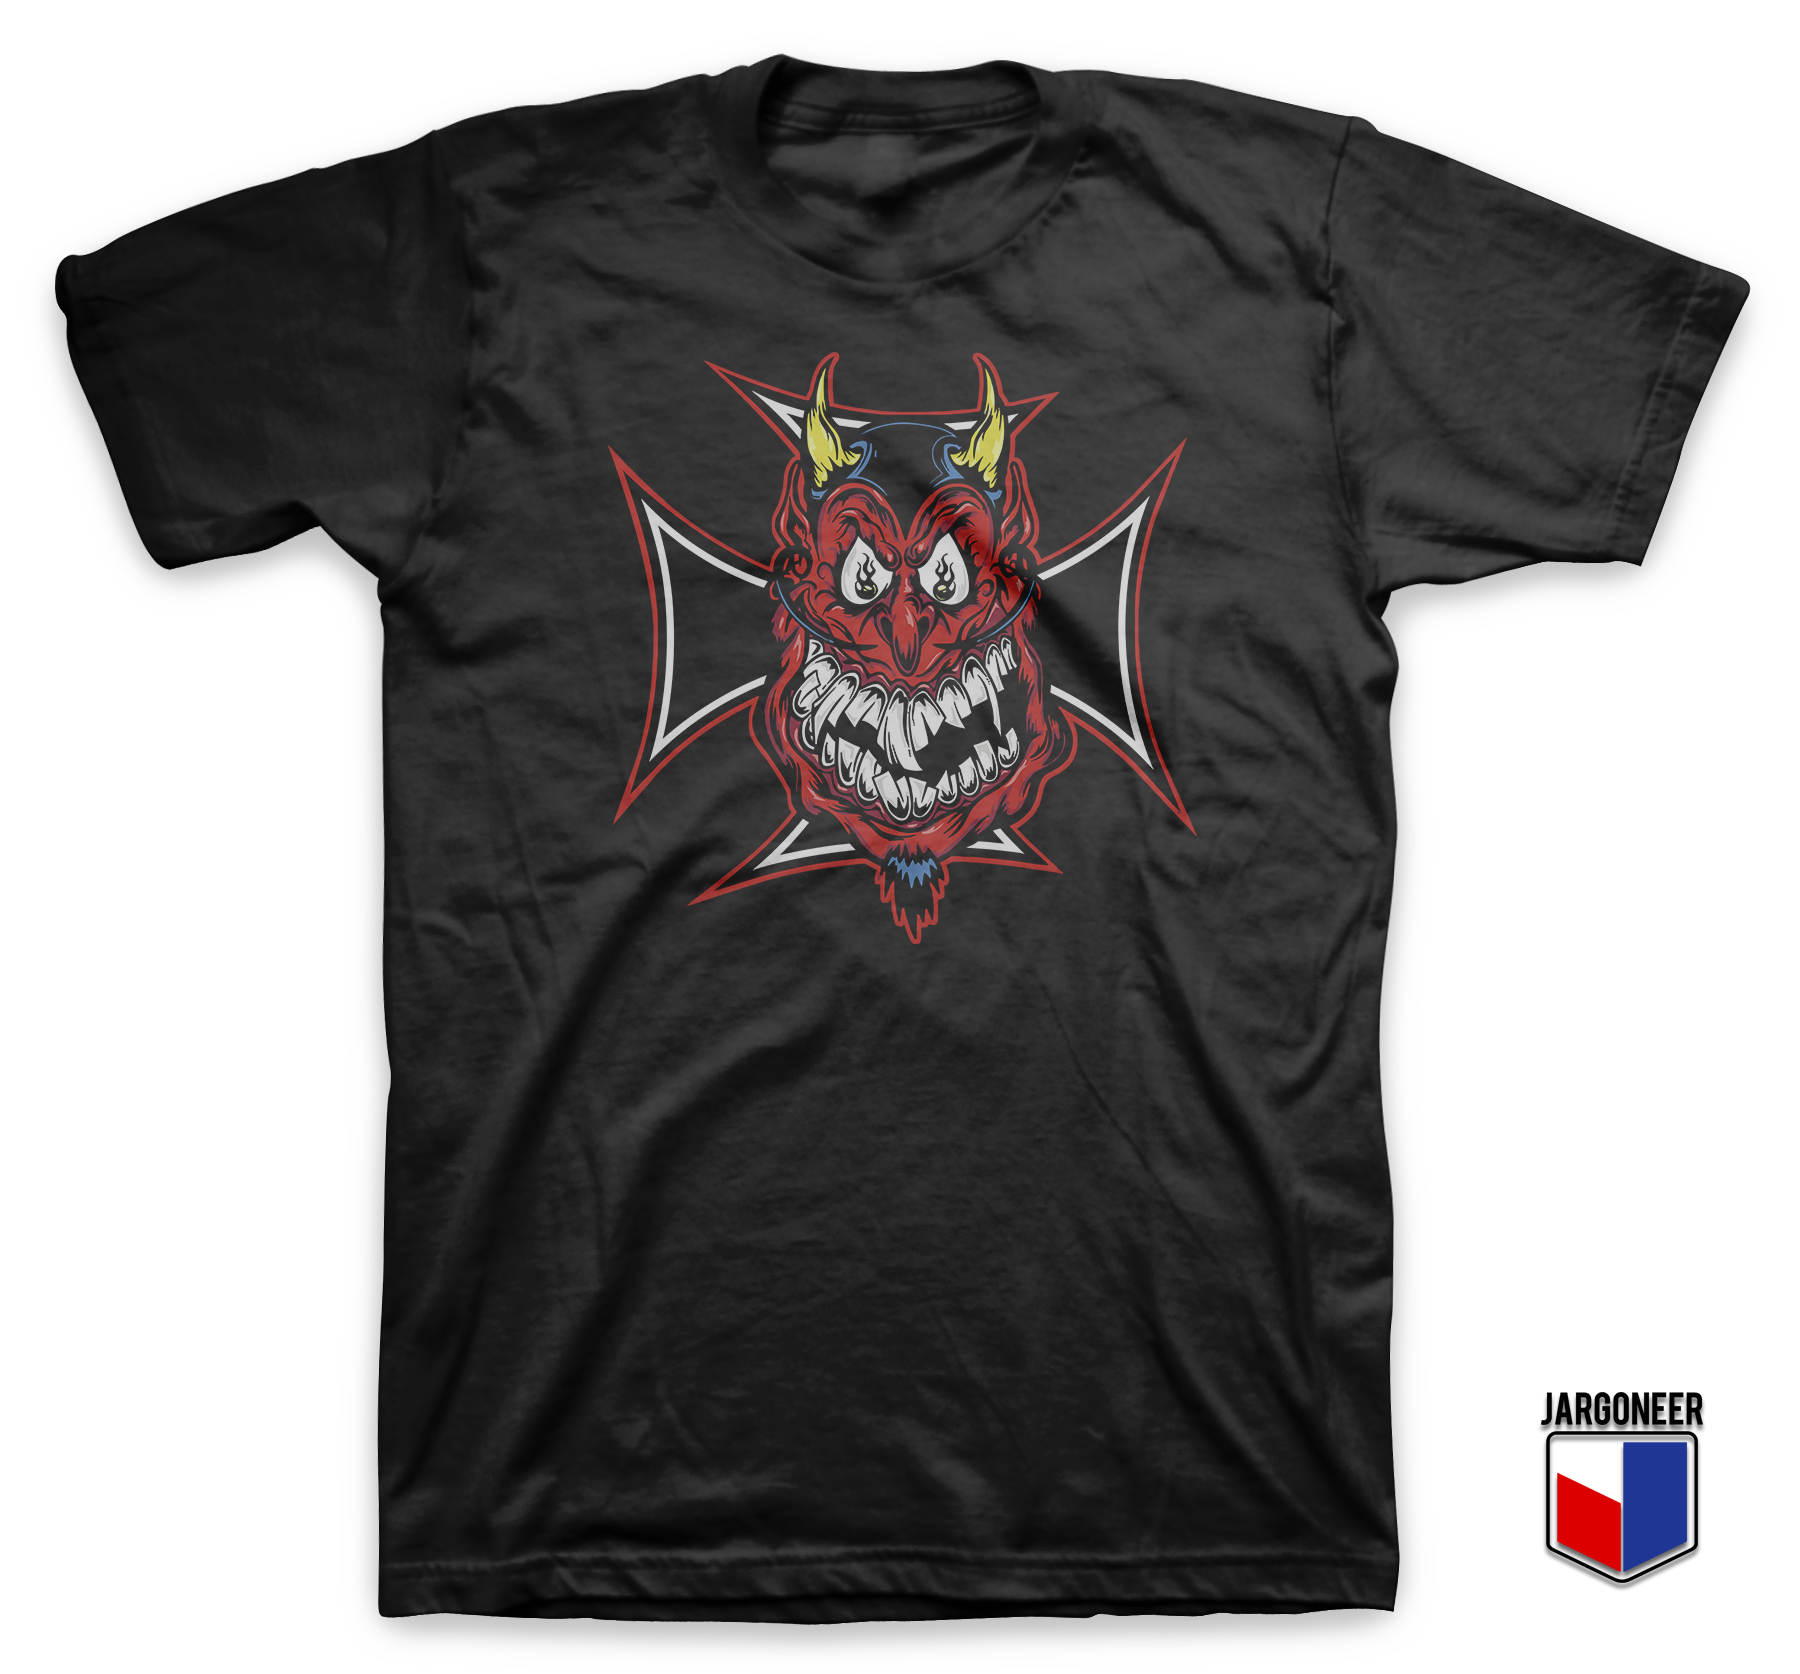 Chopper Devil Black T Shirt - Shop Unique Graphic Cool Shirt Designs